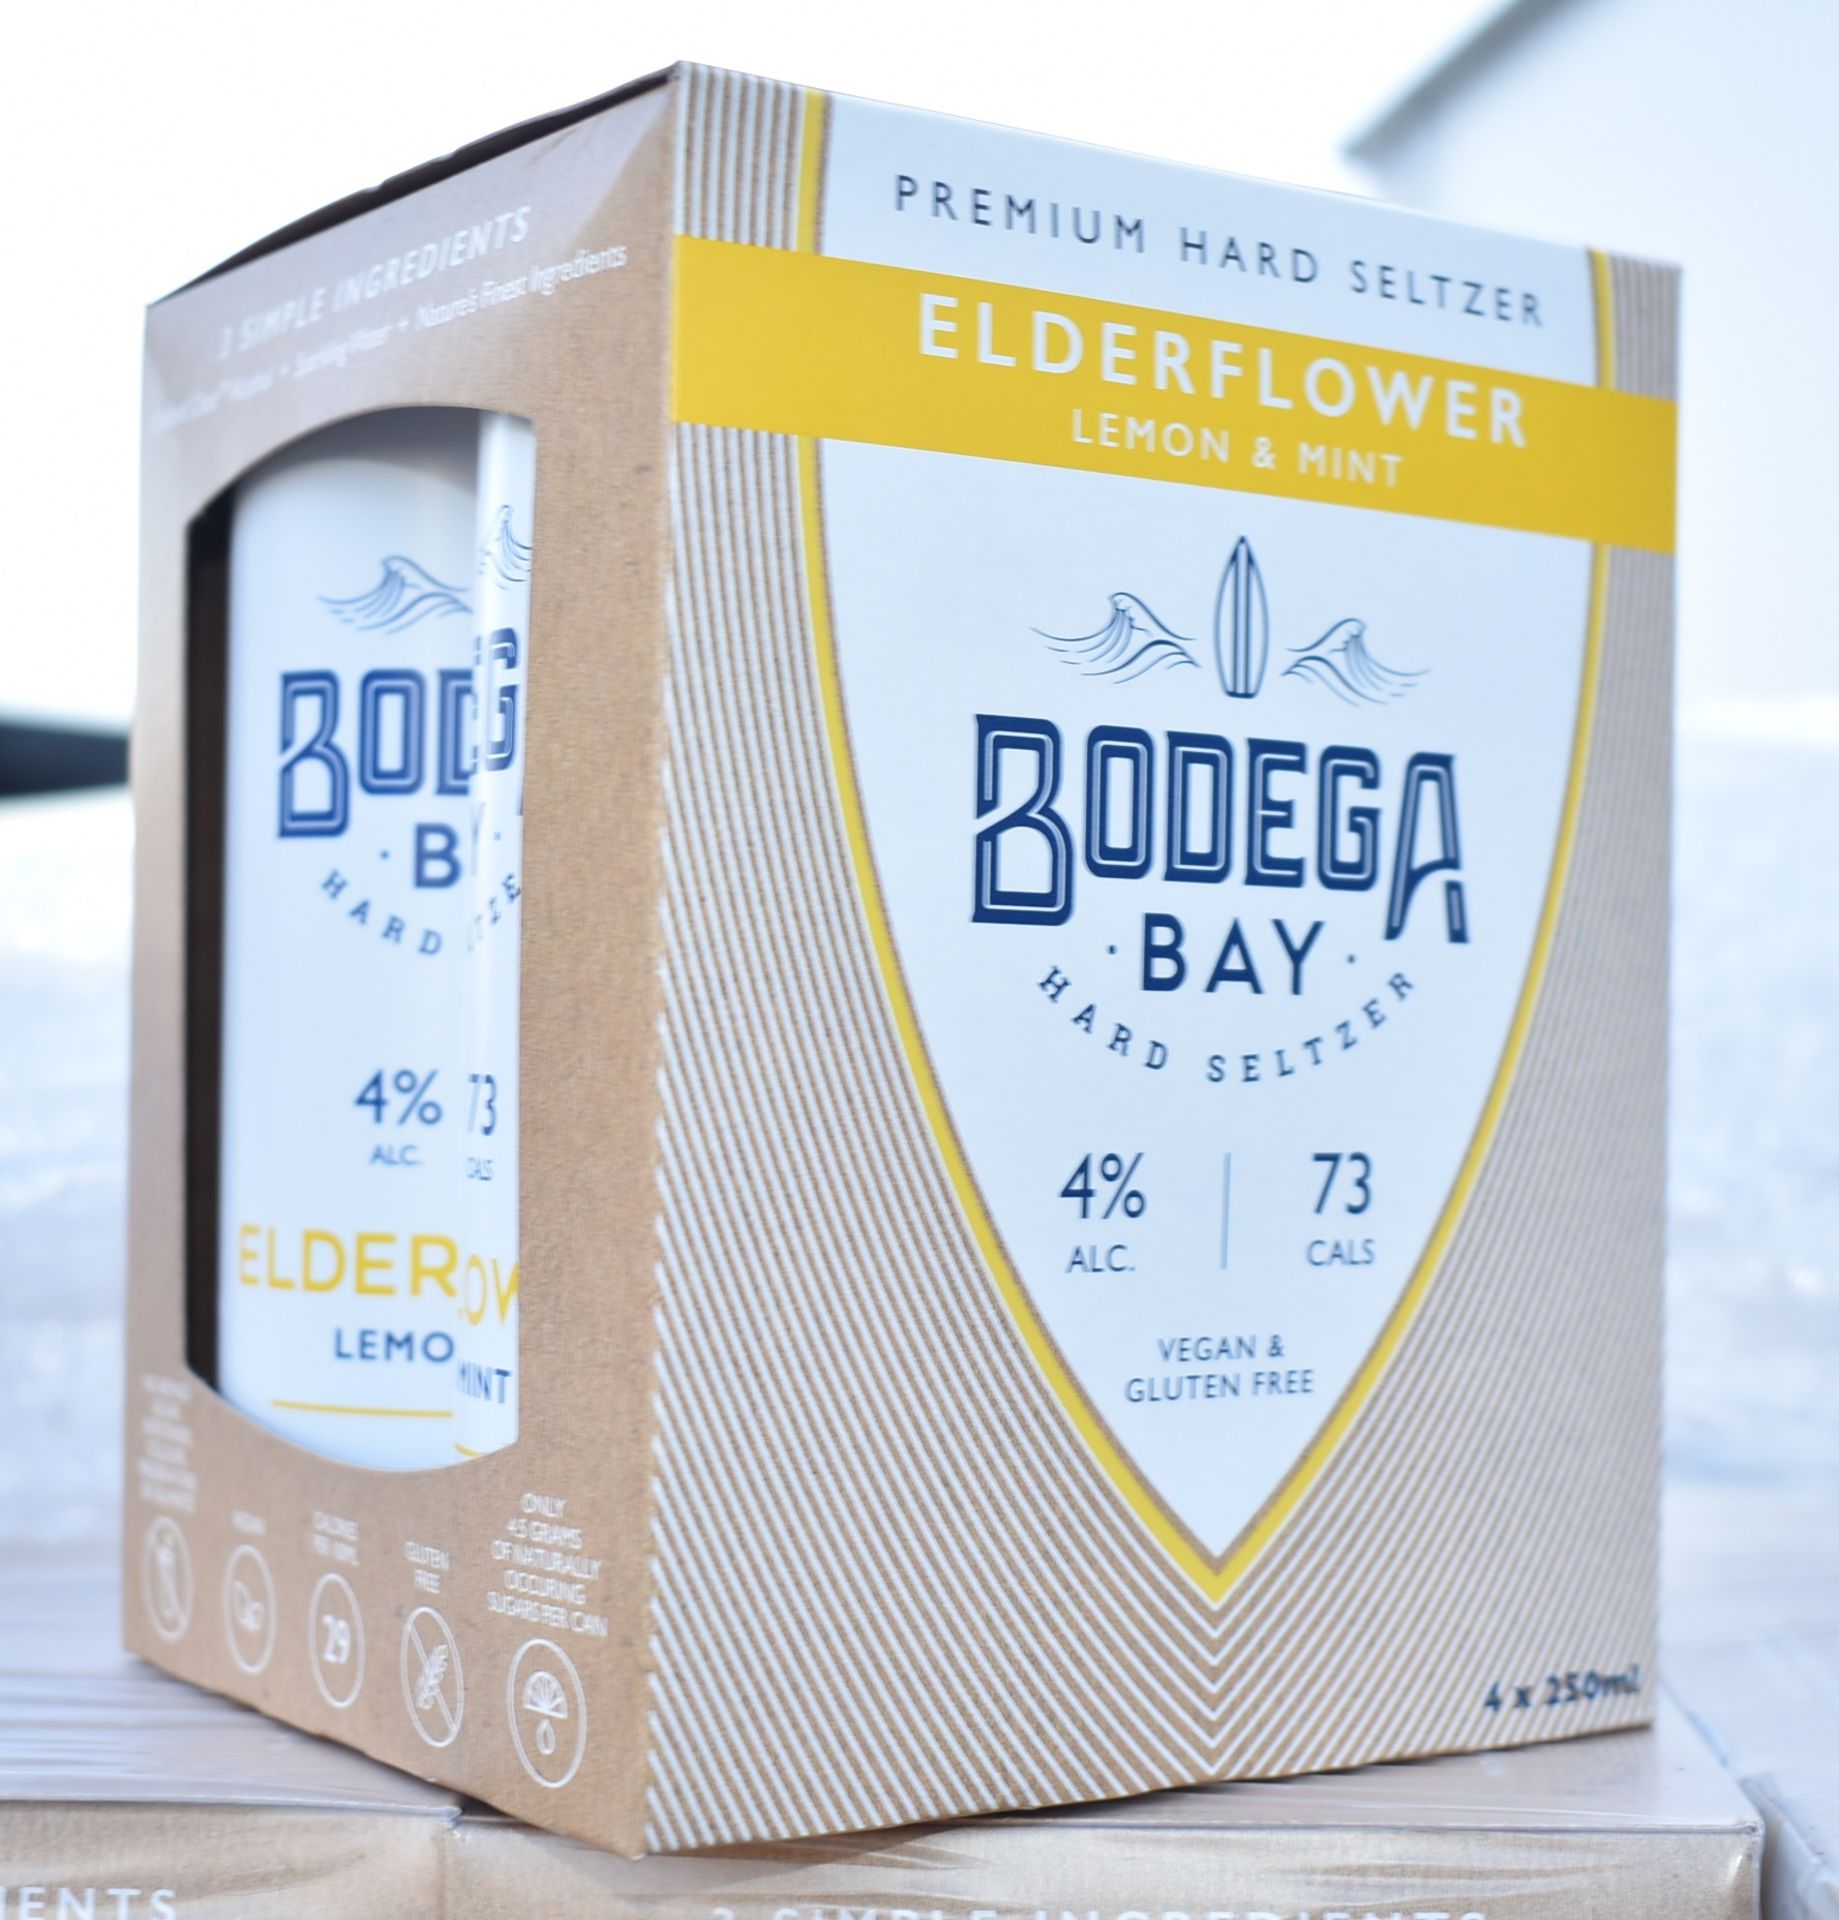 24 x Bodega Bay Hard Seltzer 250ml Alcoholic Sparkling Water Drinks - Elderflower Lemon & Mint - - Image 5 of 8